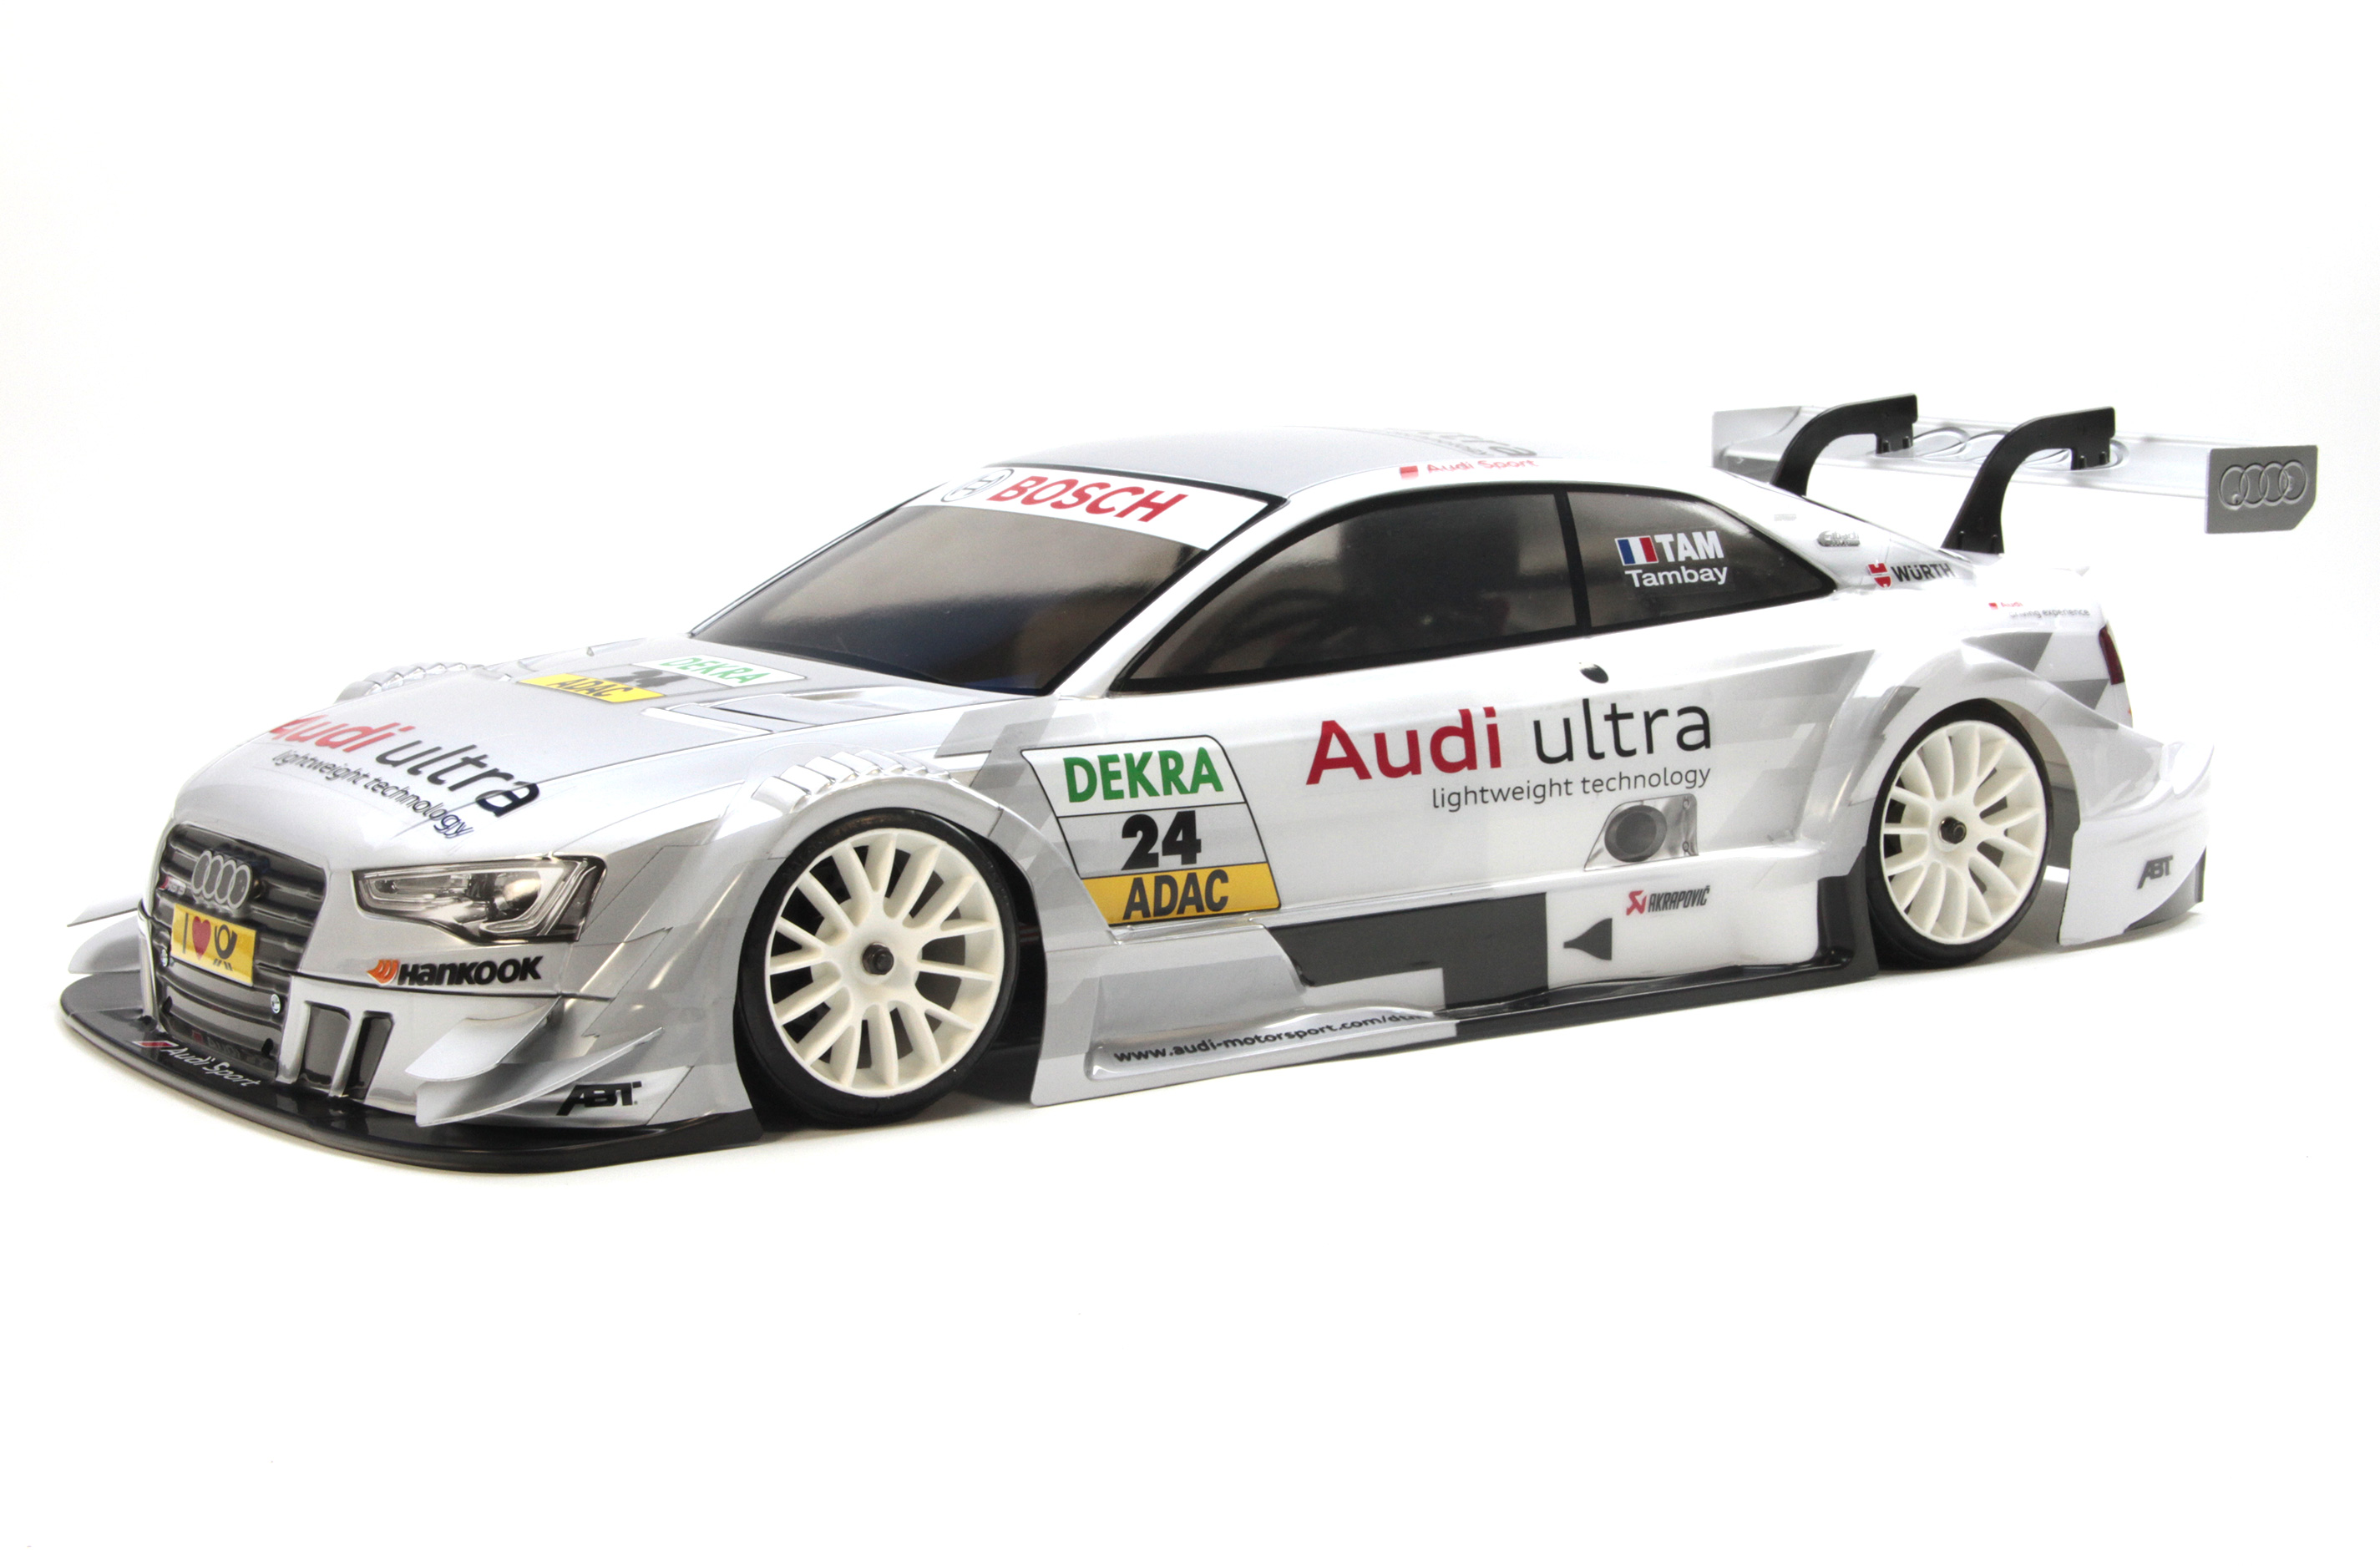 4158 FG Audi RS5 DTM komplett lackiert Team Audi-Ultra